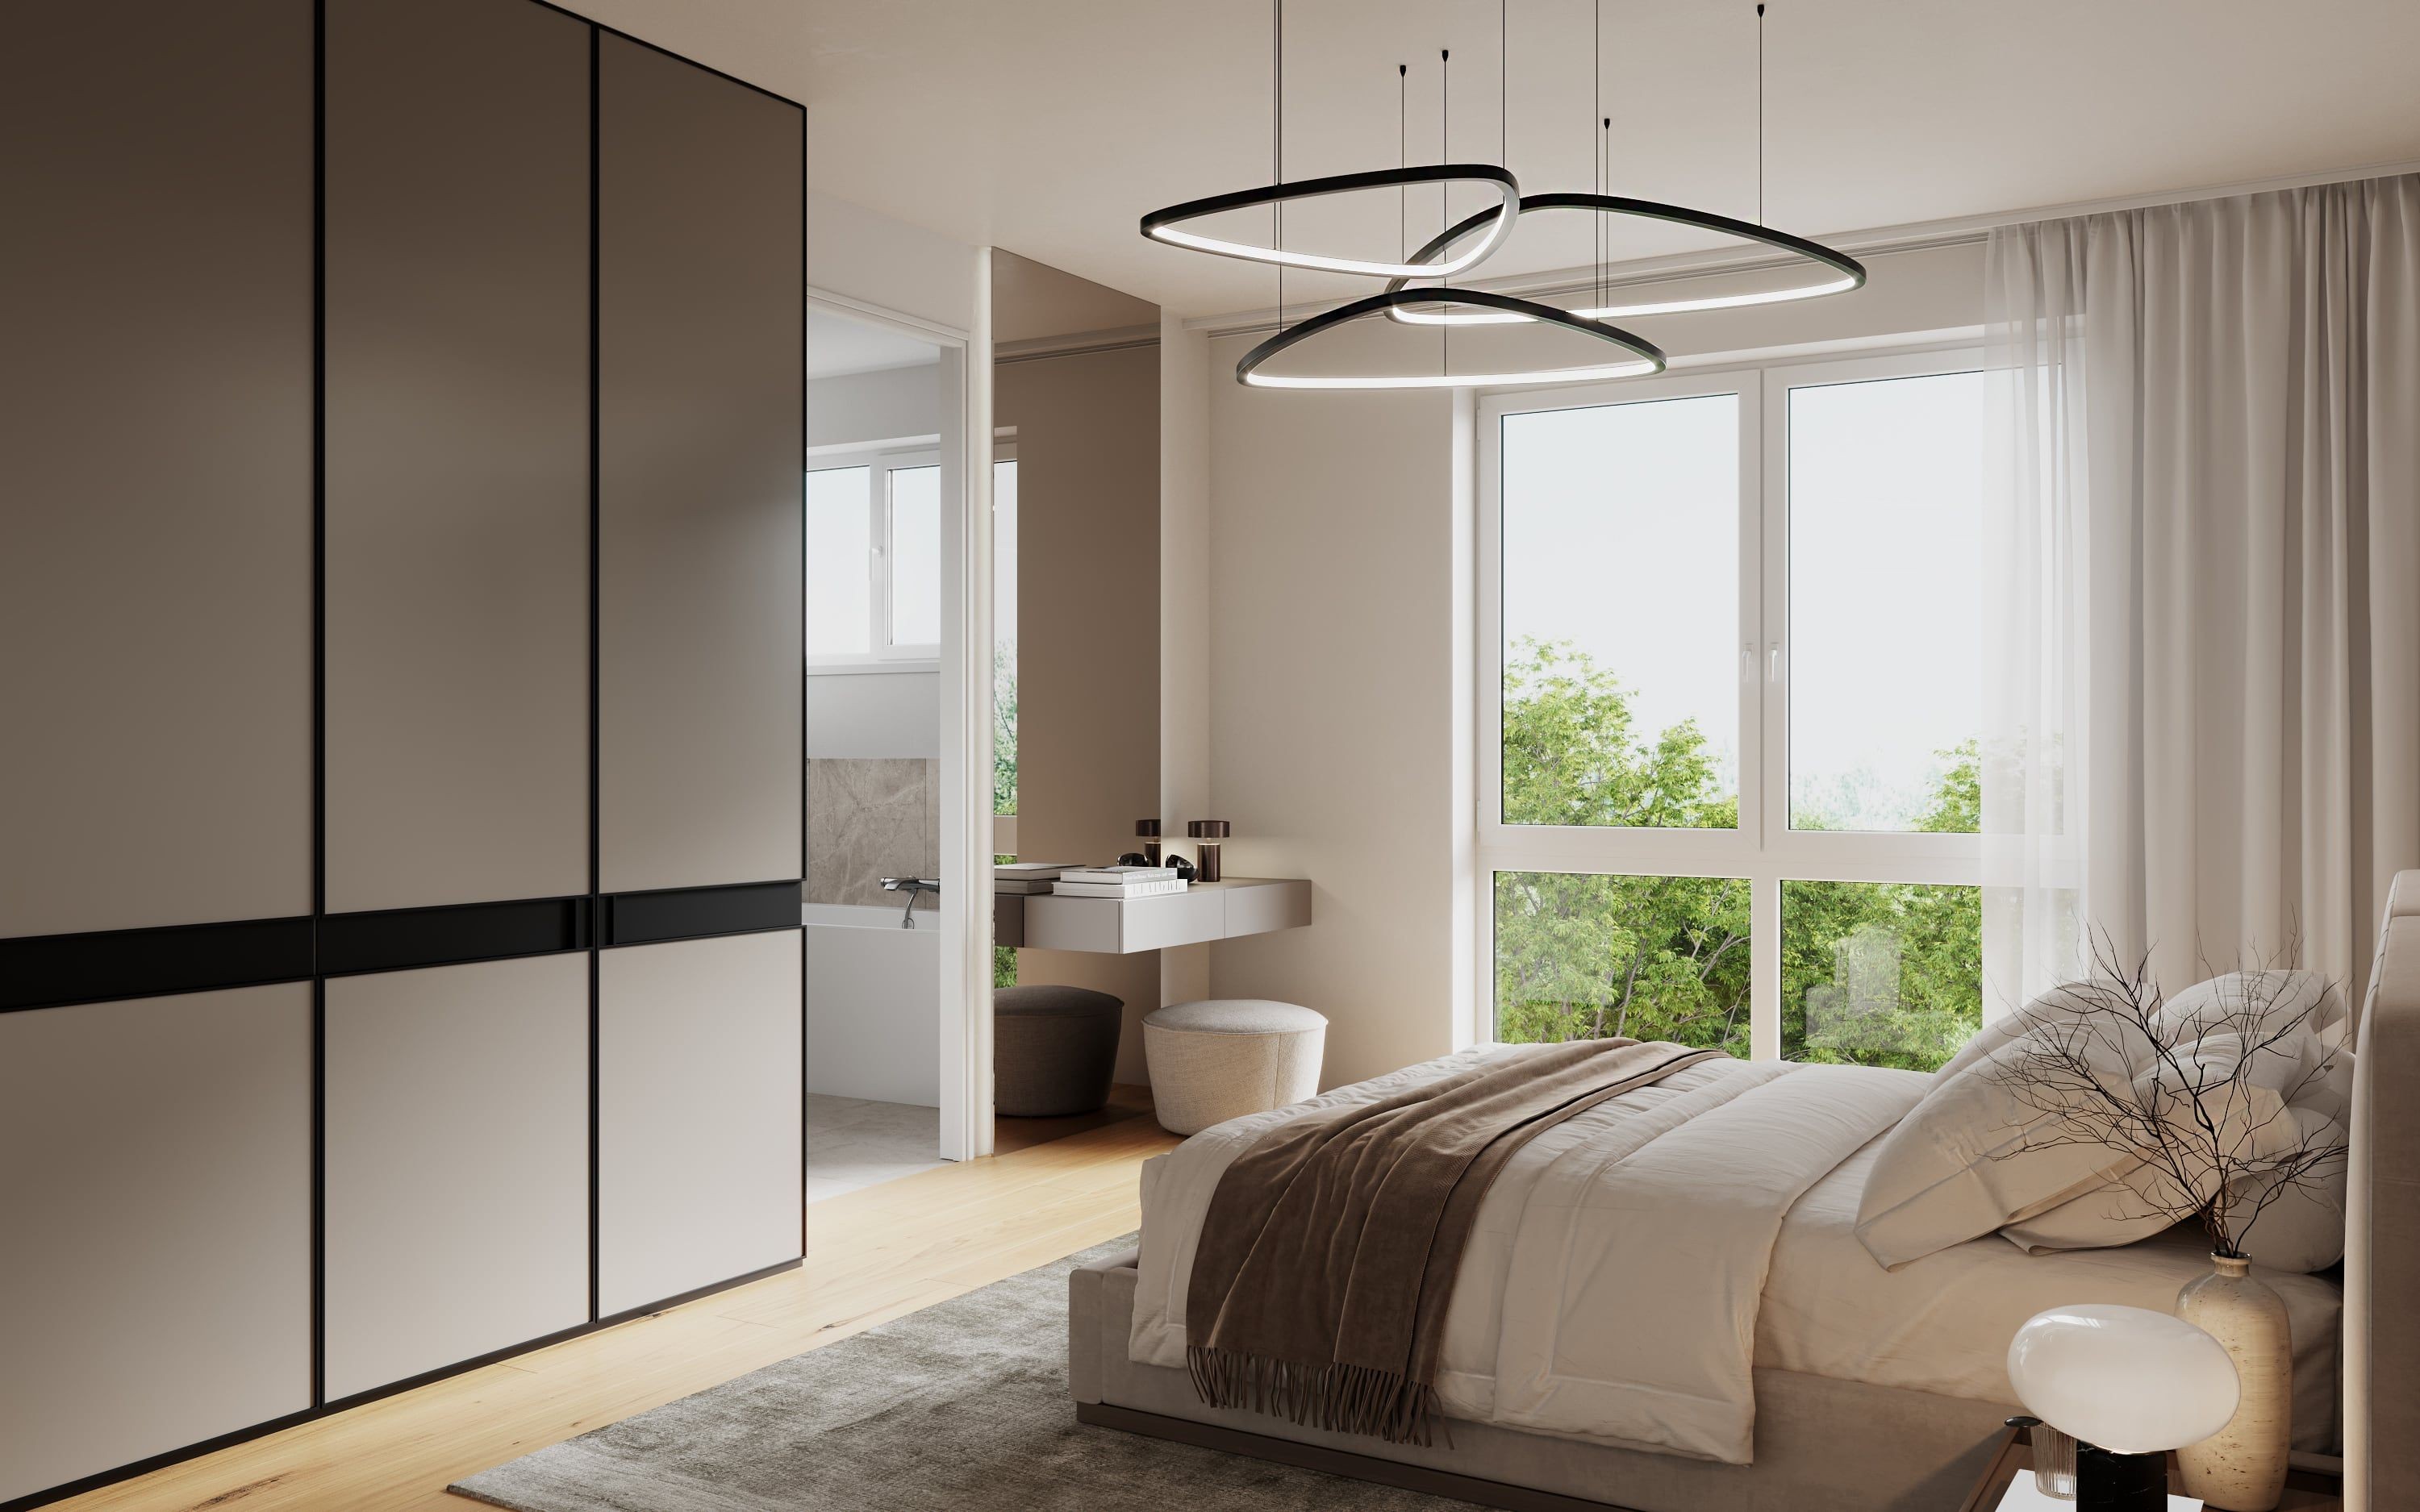 3D Innenvisualisierung des Hauptschlafzimmers mit Zugang zum Hauptbadezimmer in einer Wohnung in einem neuen Haus im Othmarscher Kirchenweg Hamburg, Deutschland